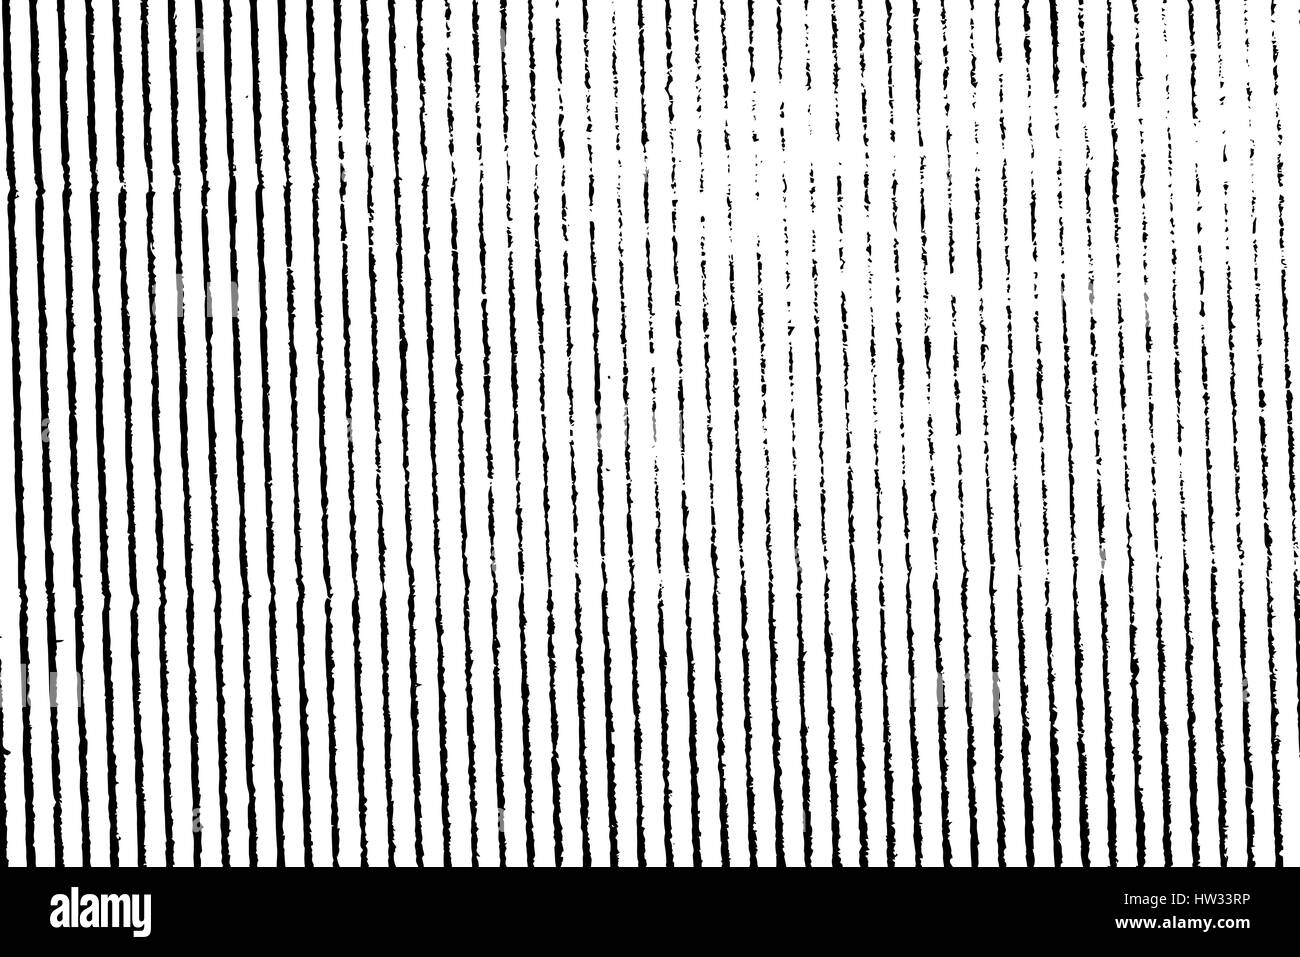 Isolierte Grunge Textur des geometrischen Material in schwarz und weiß, Vintage-Hintergrund-Ressource. EPS10 Vektor. Stock Vektor